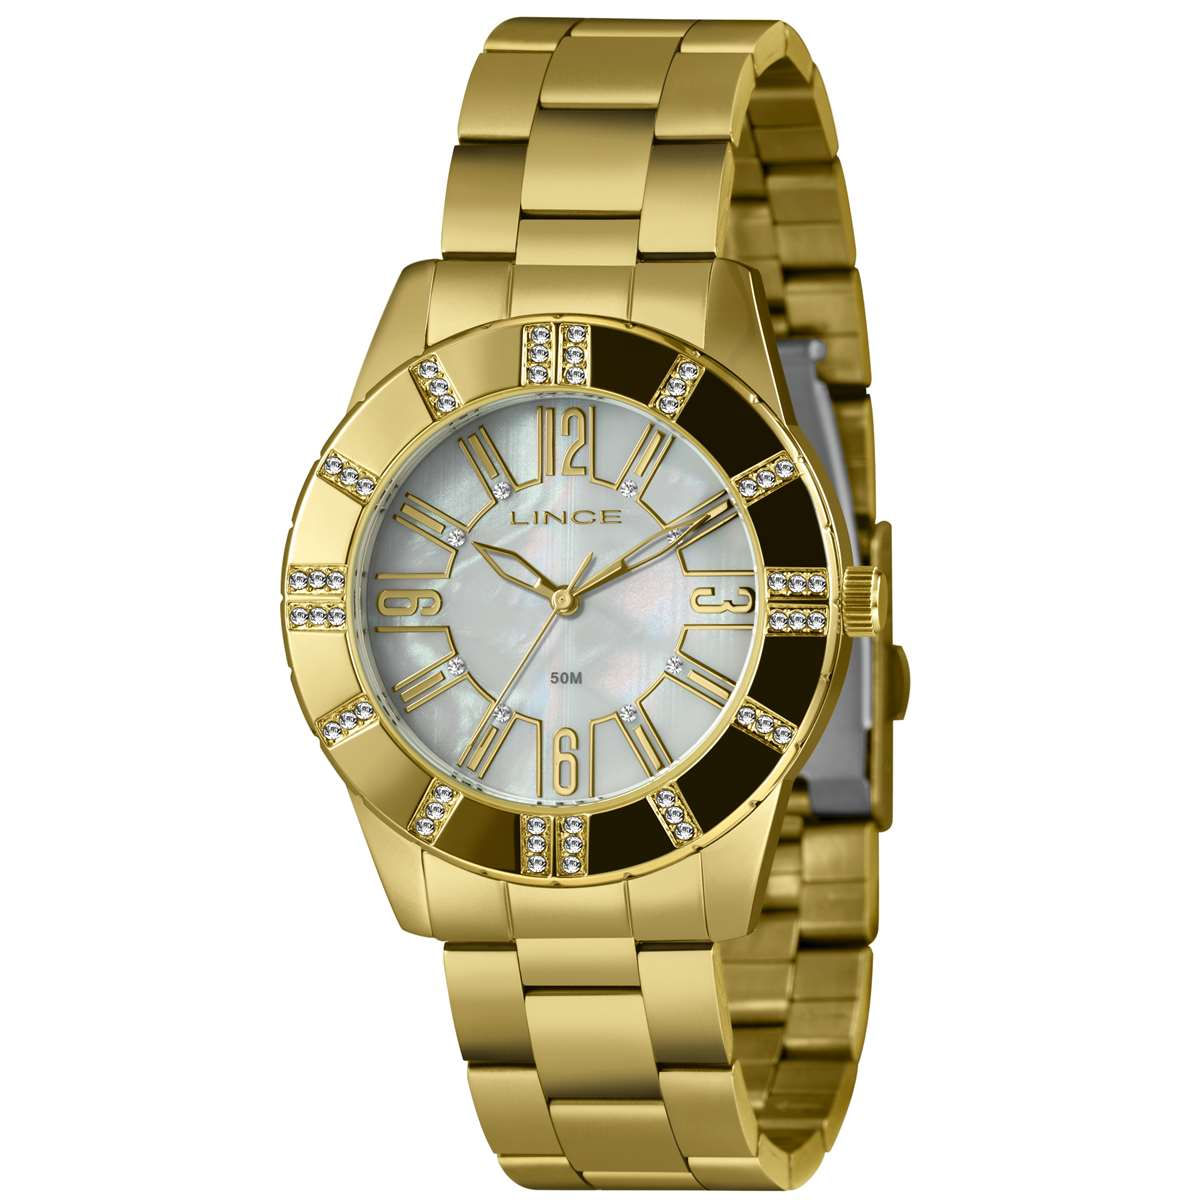 Relógio Lince Feminino Ref: Lrg4732l40 B2kx Casual Dourado